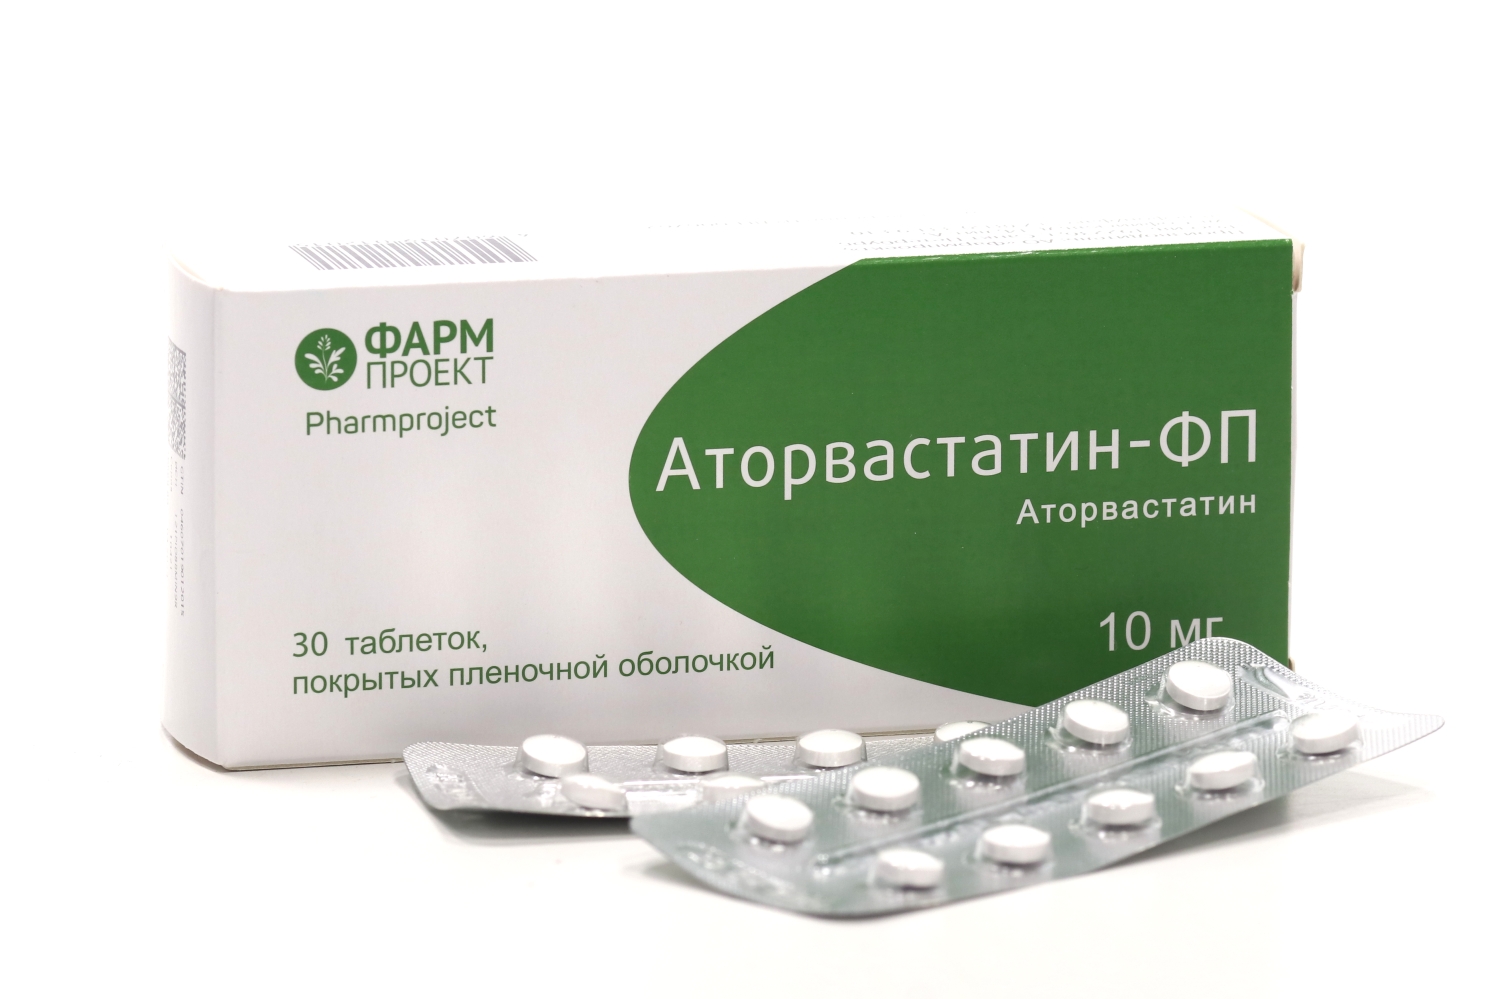 Как принимать таблетки аторвастатин. Аторвастатин оригинальный. Аторвастатин 60 мг. Название оригинального аторвастатина. Аторвастатин 40 мг.